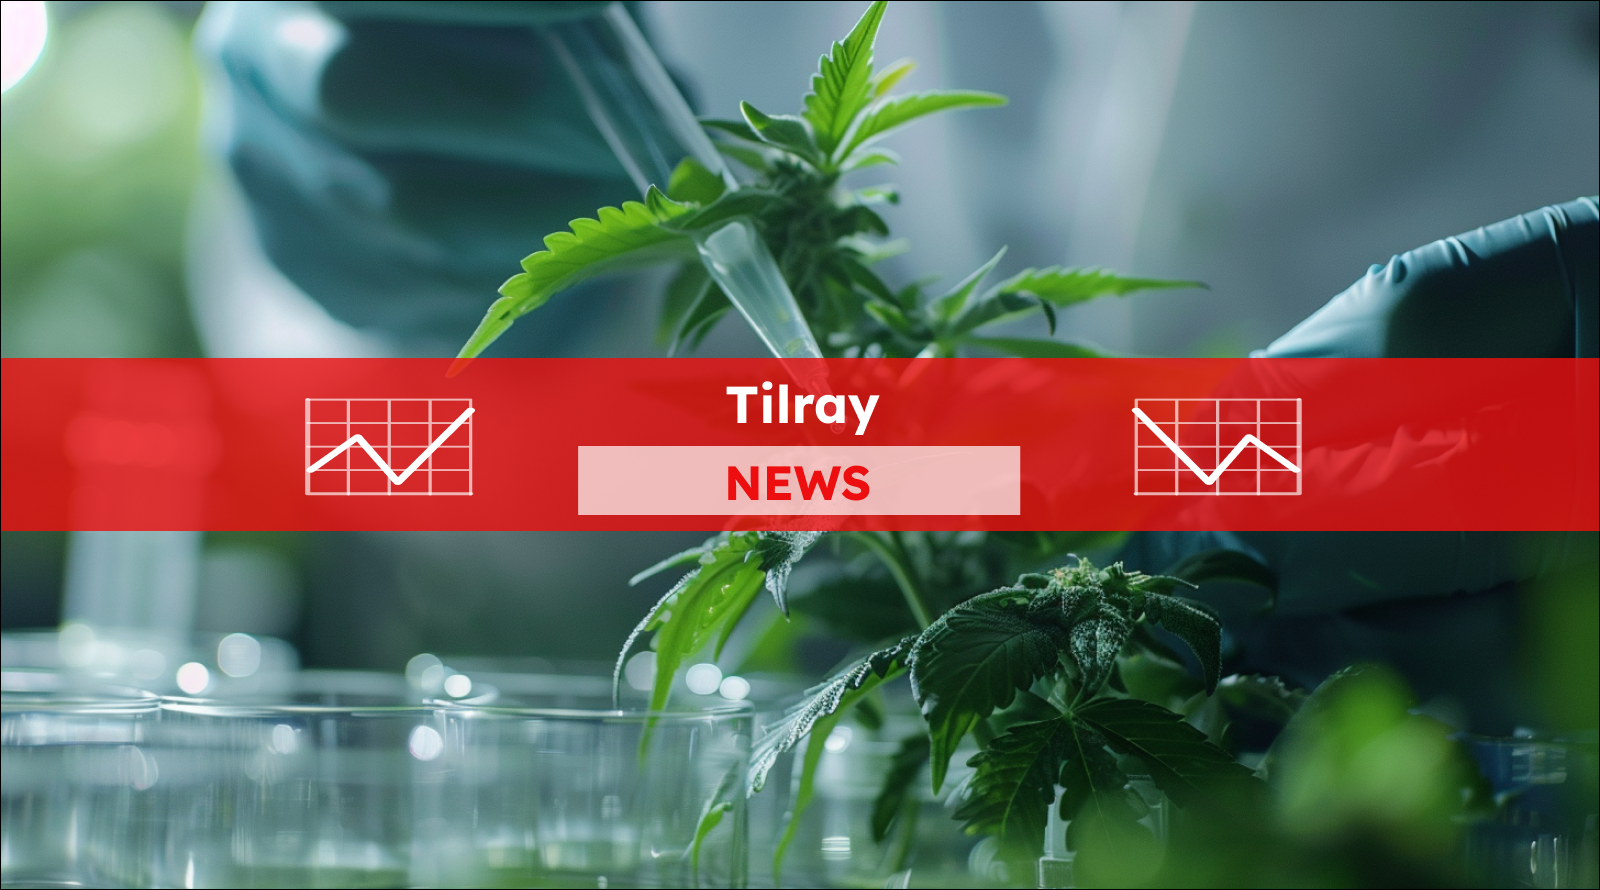 Nahaufnahme von Cannabis im Labor, mit einem Tilray NEWS Banner.